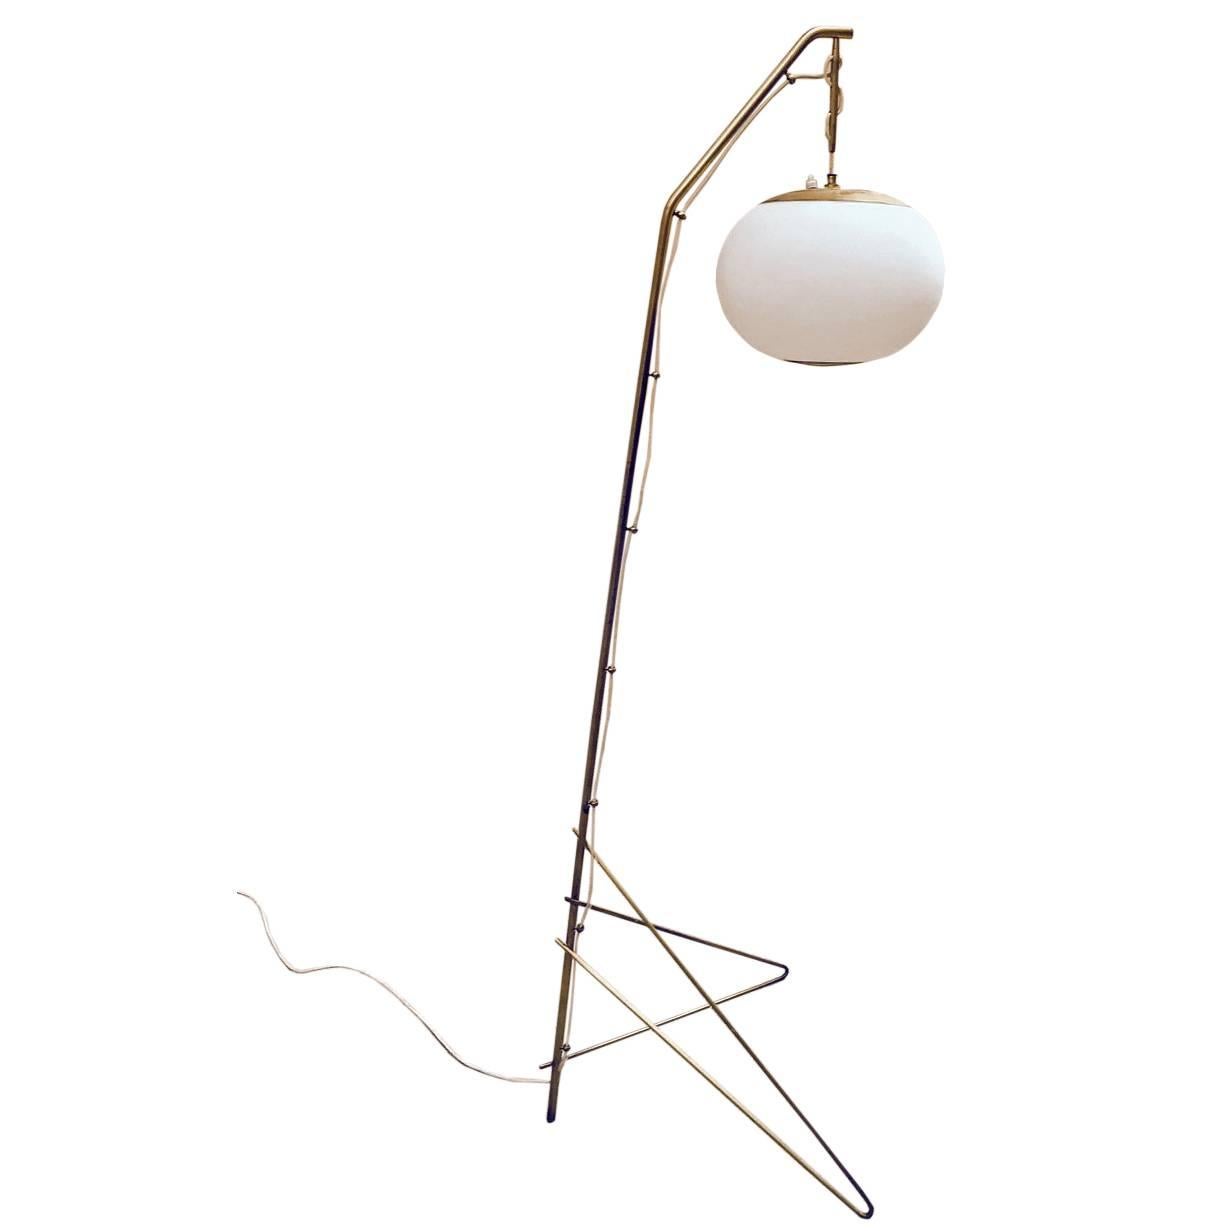 Rare Floor Lamp Attributed to Gino Sarfatti